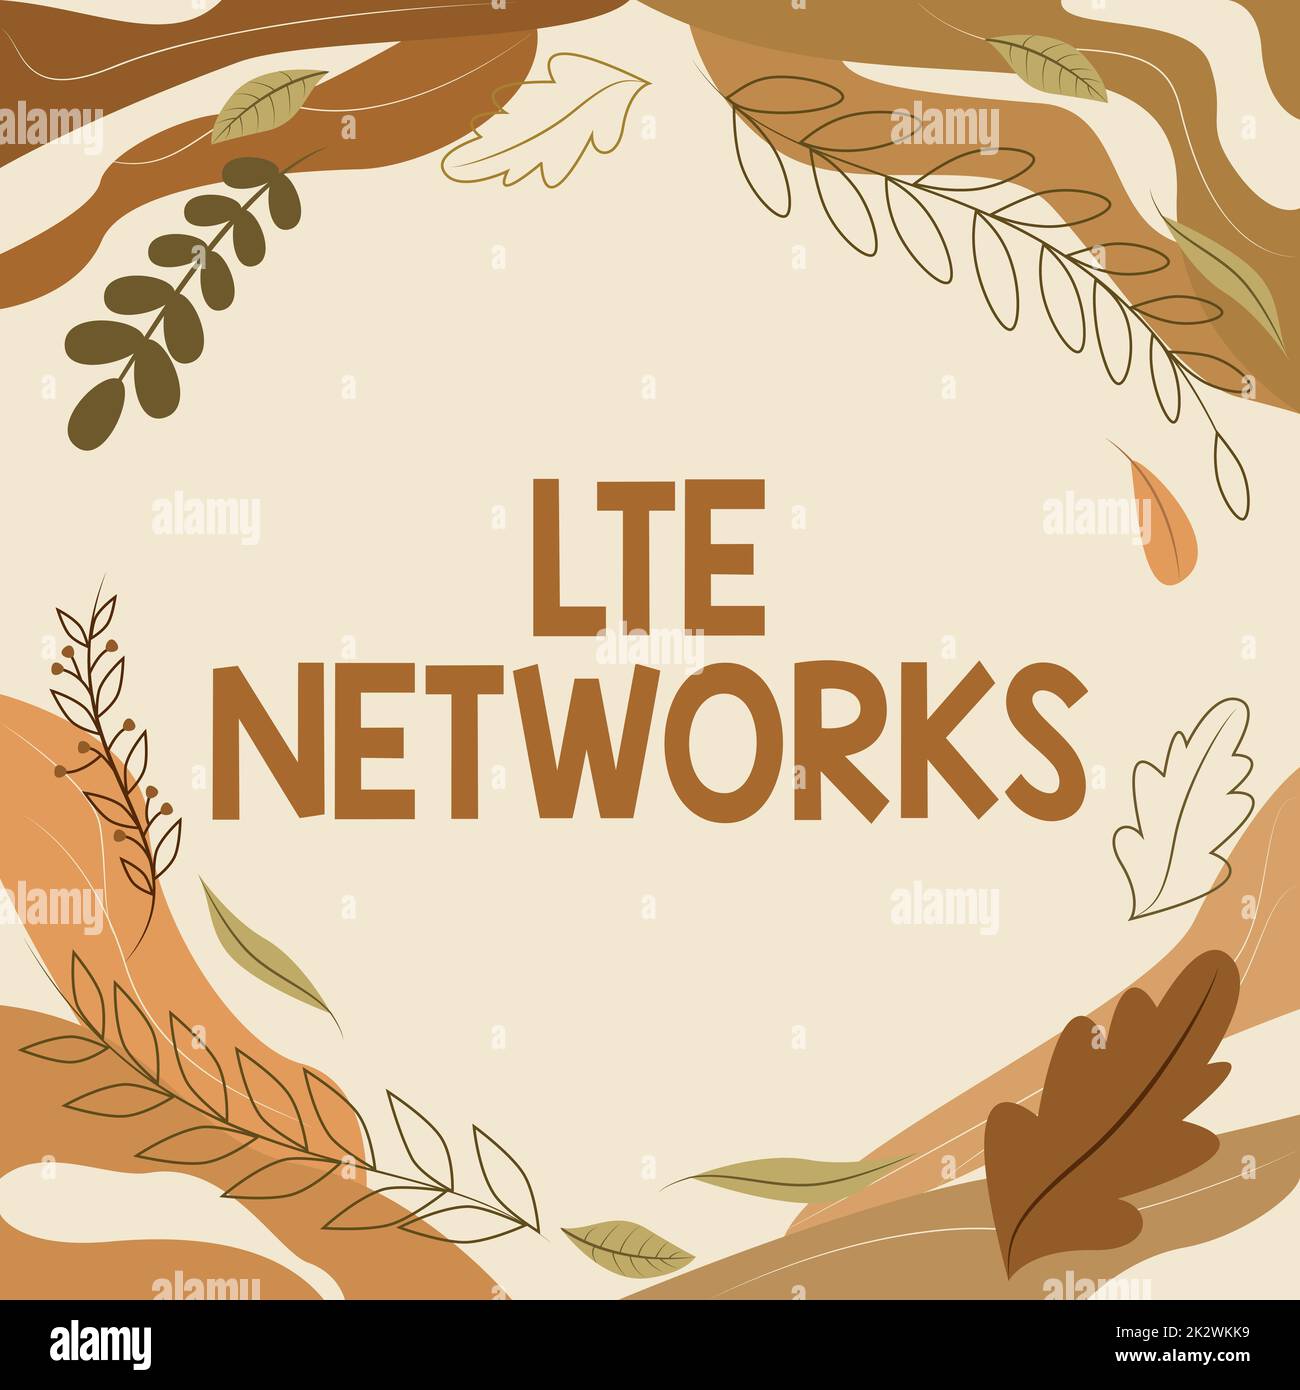 Handschriftliches Schild LTE Networks. Geschäftsansatz schnellste Netzwerkverbindung, die für drahtlose Kommunikation verfügbar ist Blank Frame dekoriert mit Abstract Modernized Forms Flowers and Foliage. Stockfoto